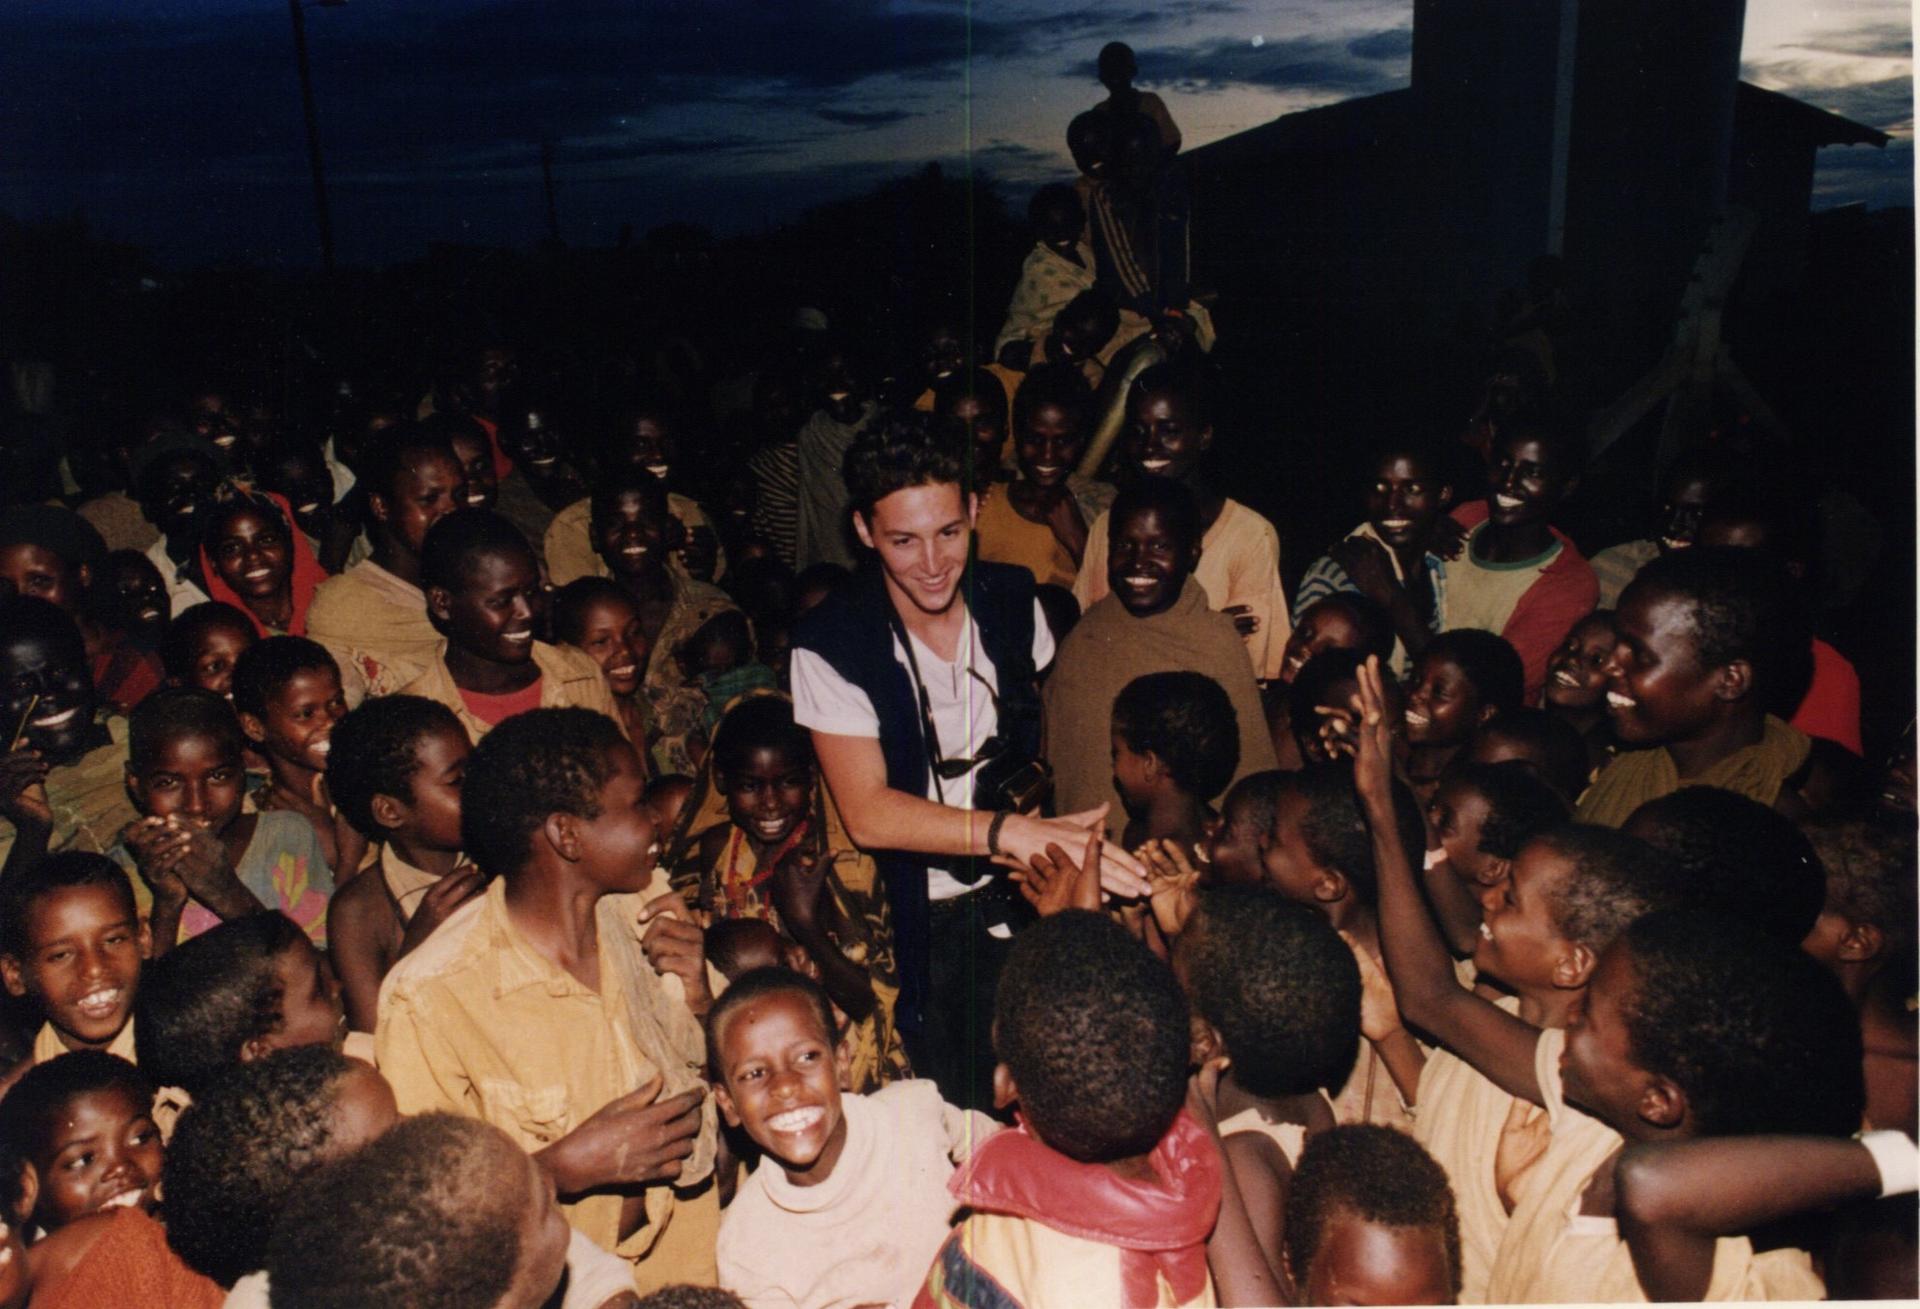 Dan Eldon surrounded by Somali children.